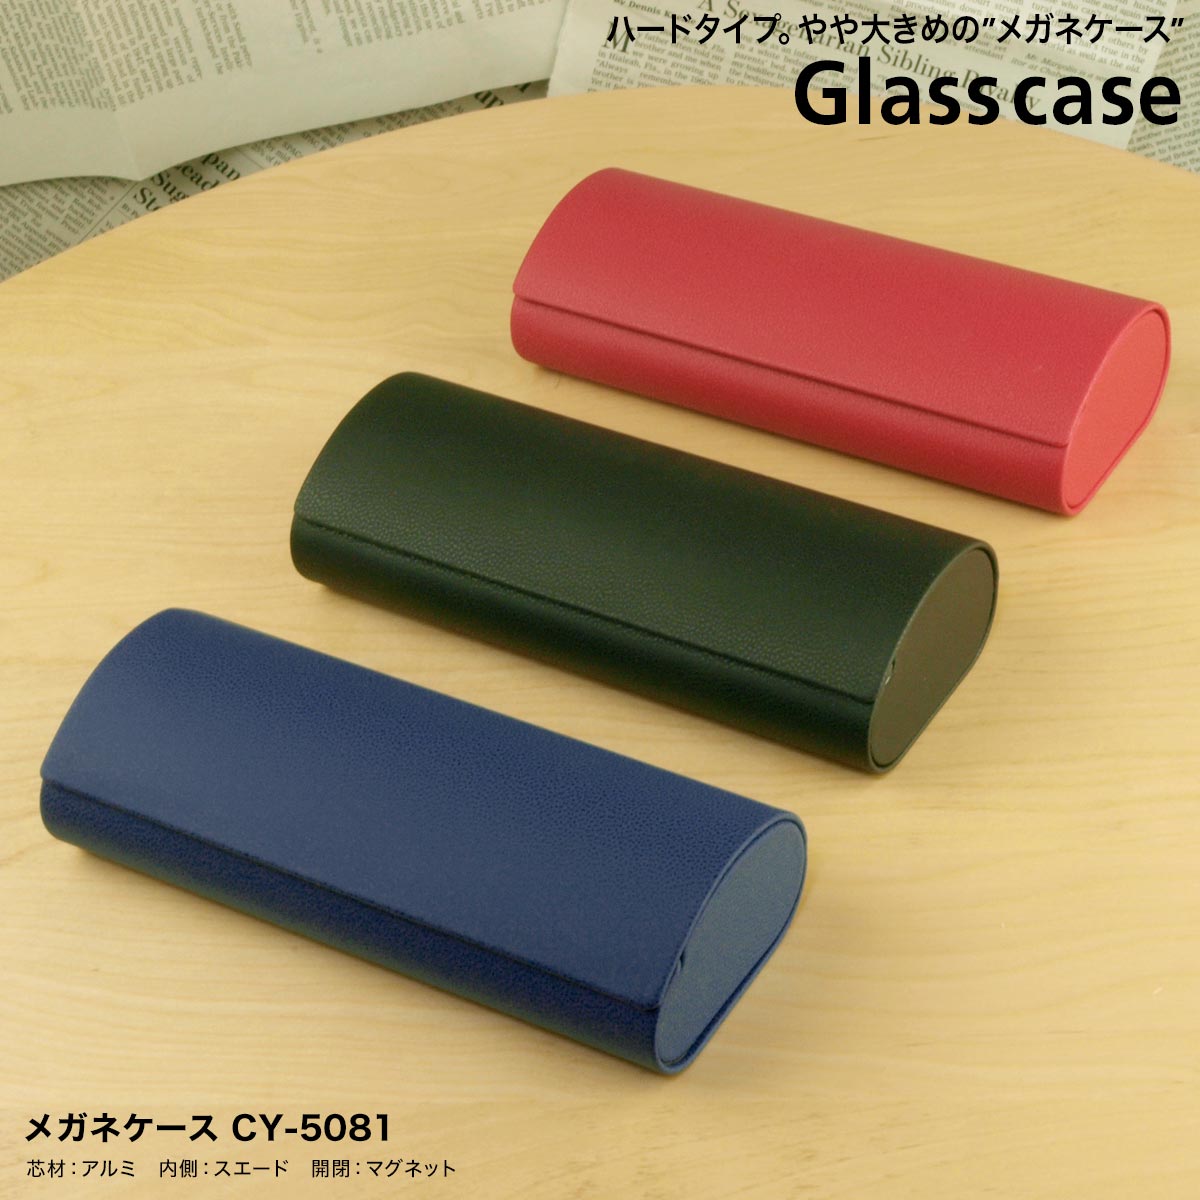 メガネケース レディース メガネケース 大きめ シンプル おしゃれ カラフル 薄型 ケース サングラス PCメガネ 老眼鏡 CY-5081